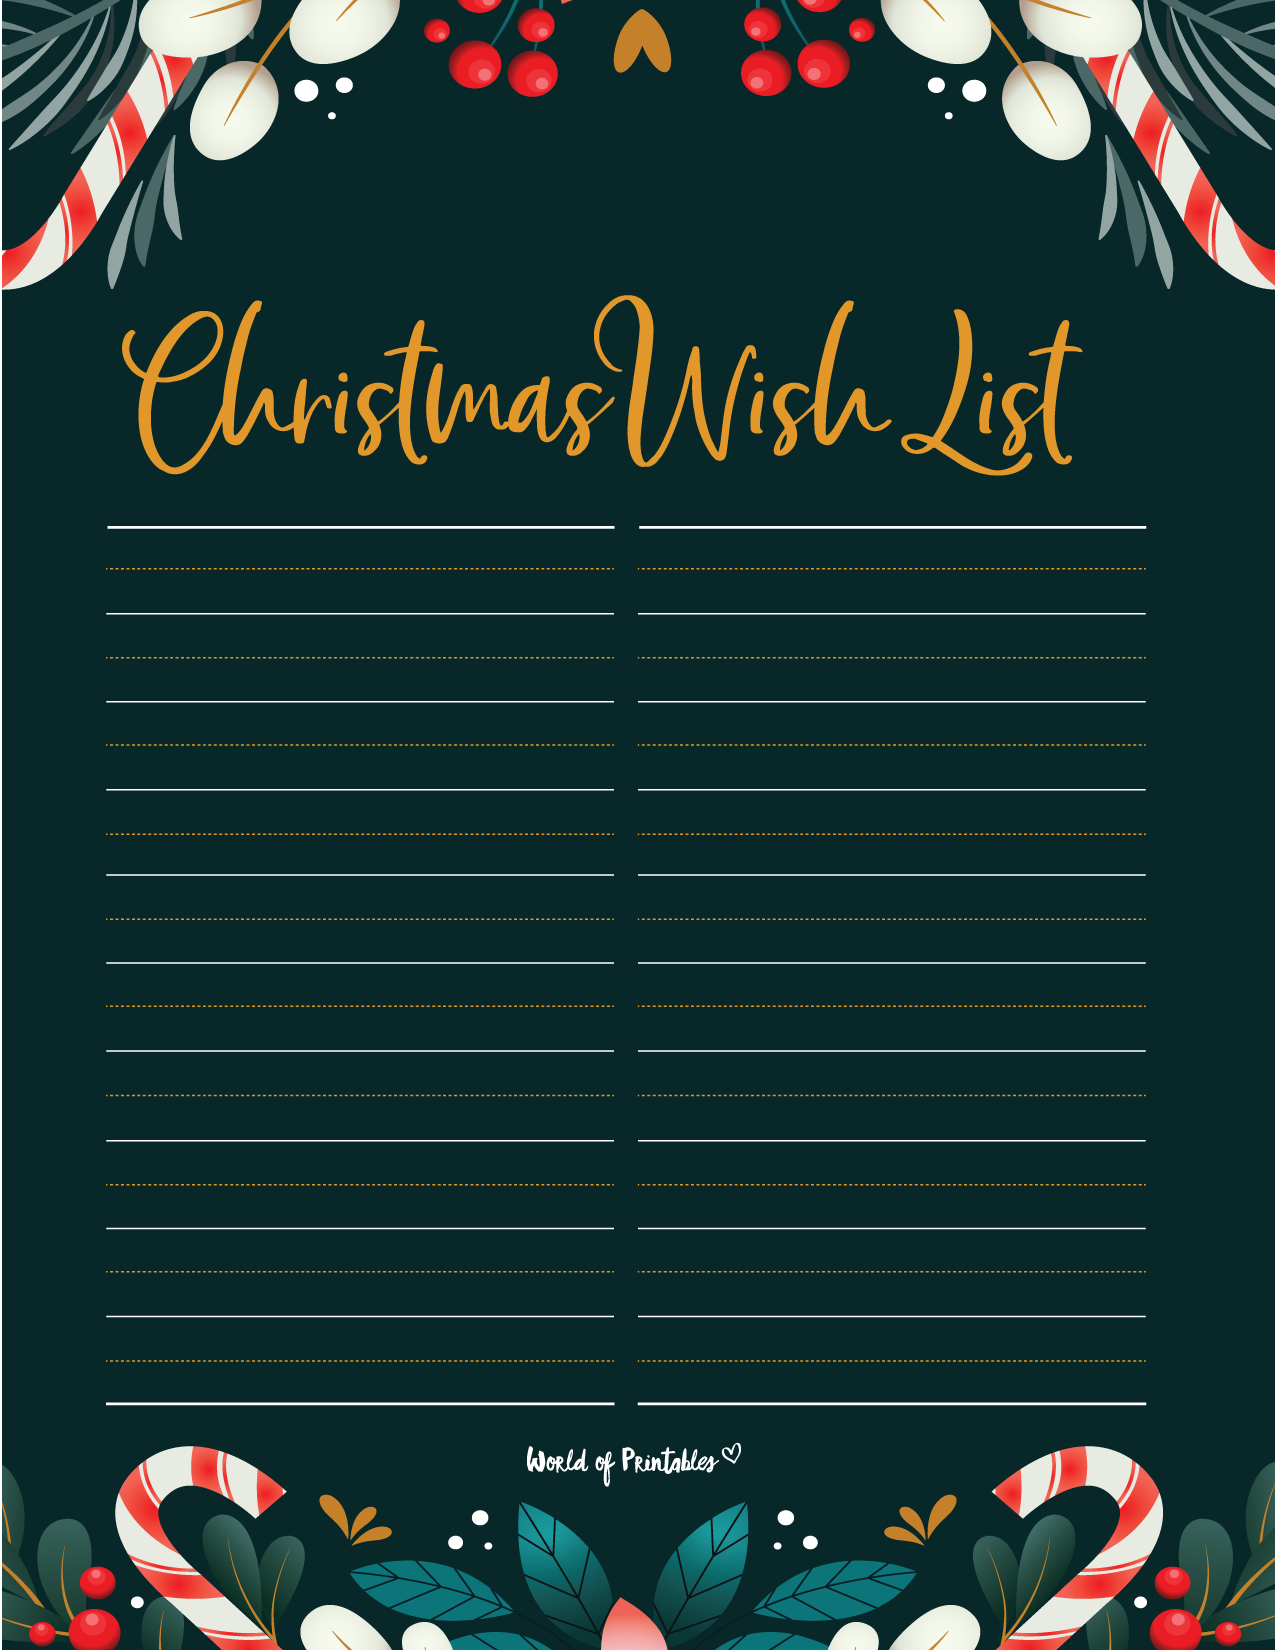 Wish List Templates - For Christmas, Amazon & Universal - World of Printables